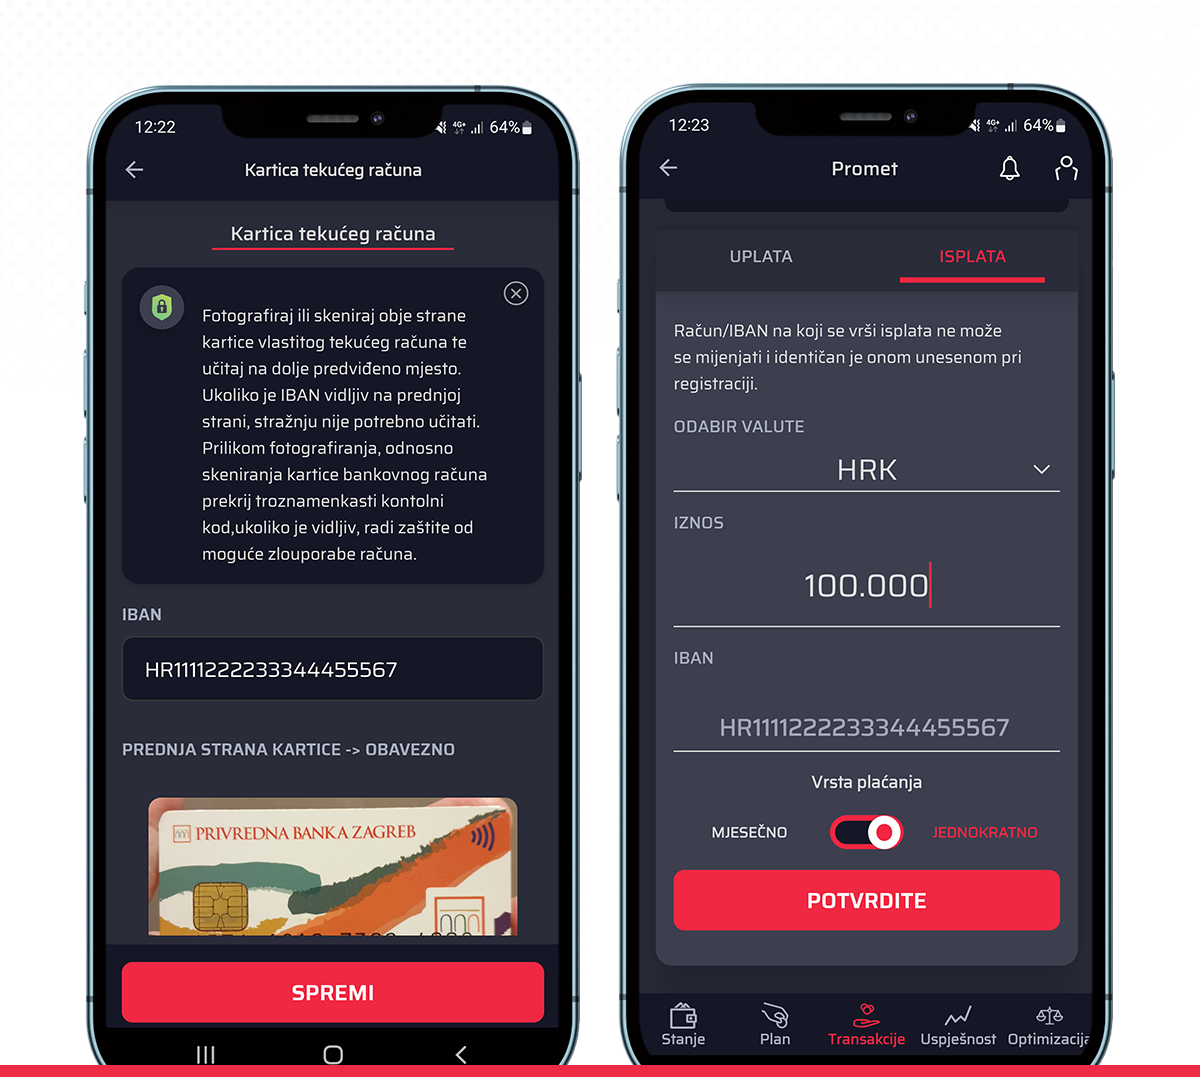 robo advisor - prikaz ekrana unošenja osobnih podataka i kartice u Genius by Intercapital aplikaciju